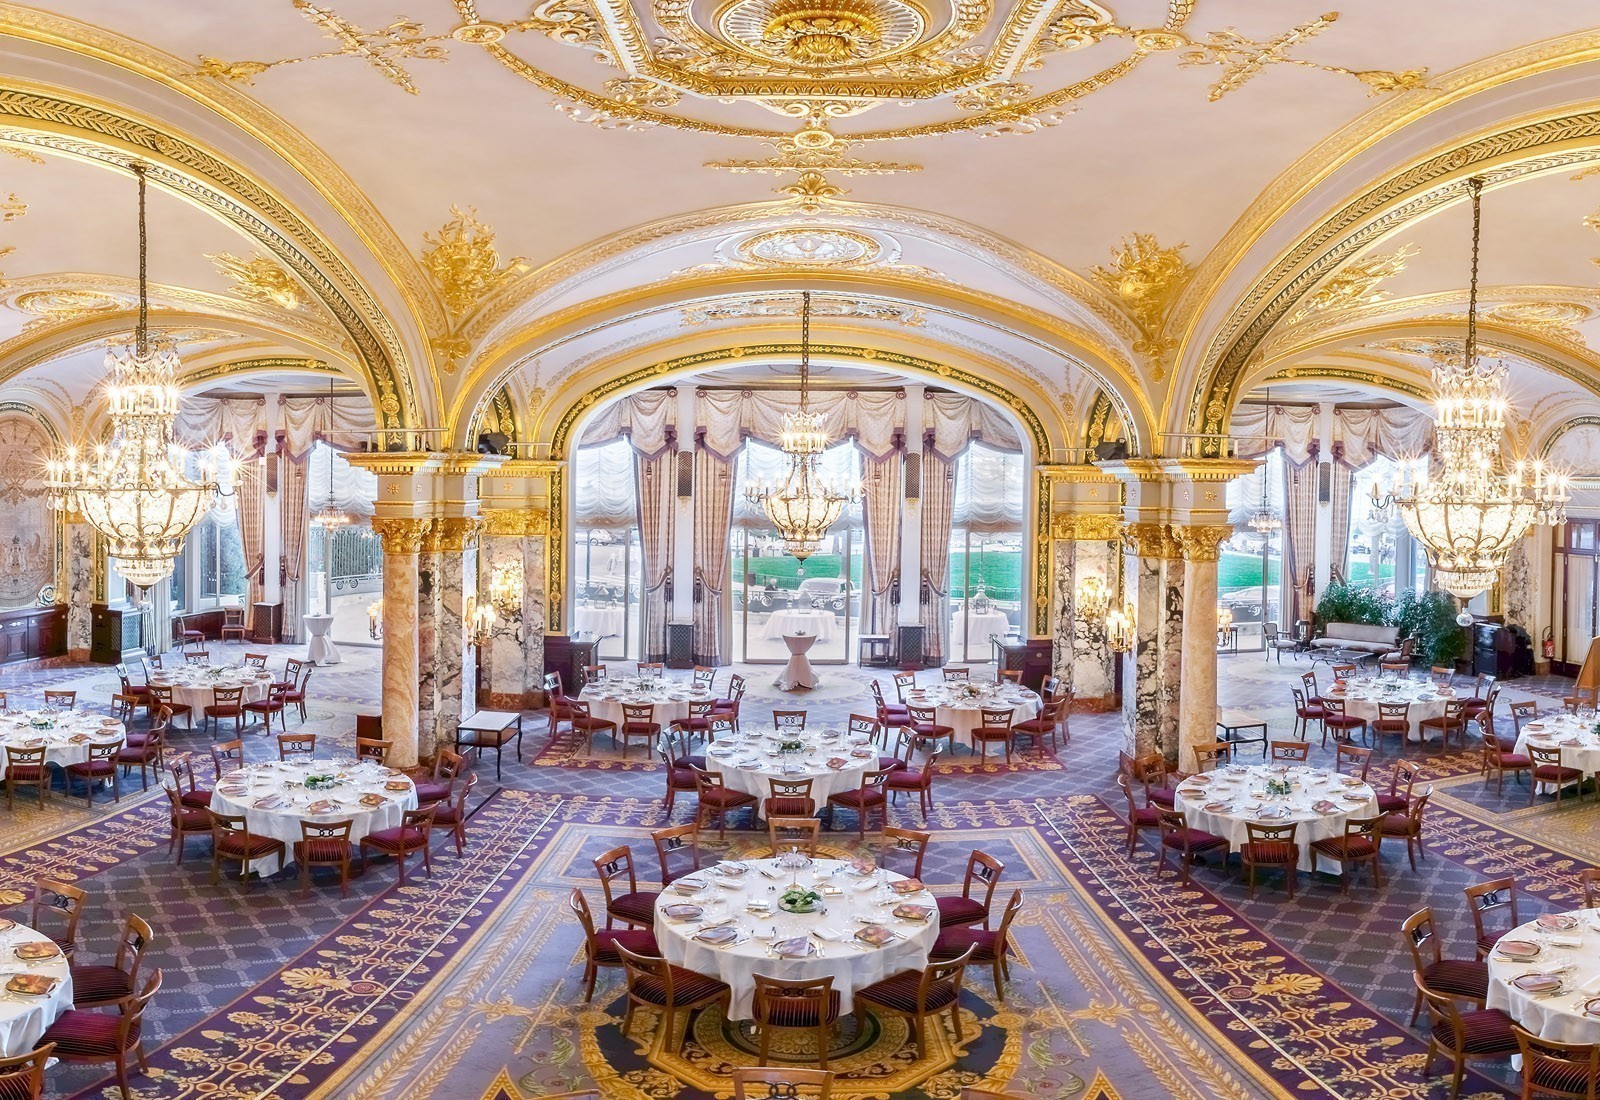 Η μία και μοναδική, η απόλυτη σουίτα στο Mόντε Κάρλο – Η Princess Grace Suite του Hôtel de Paris